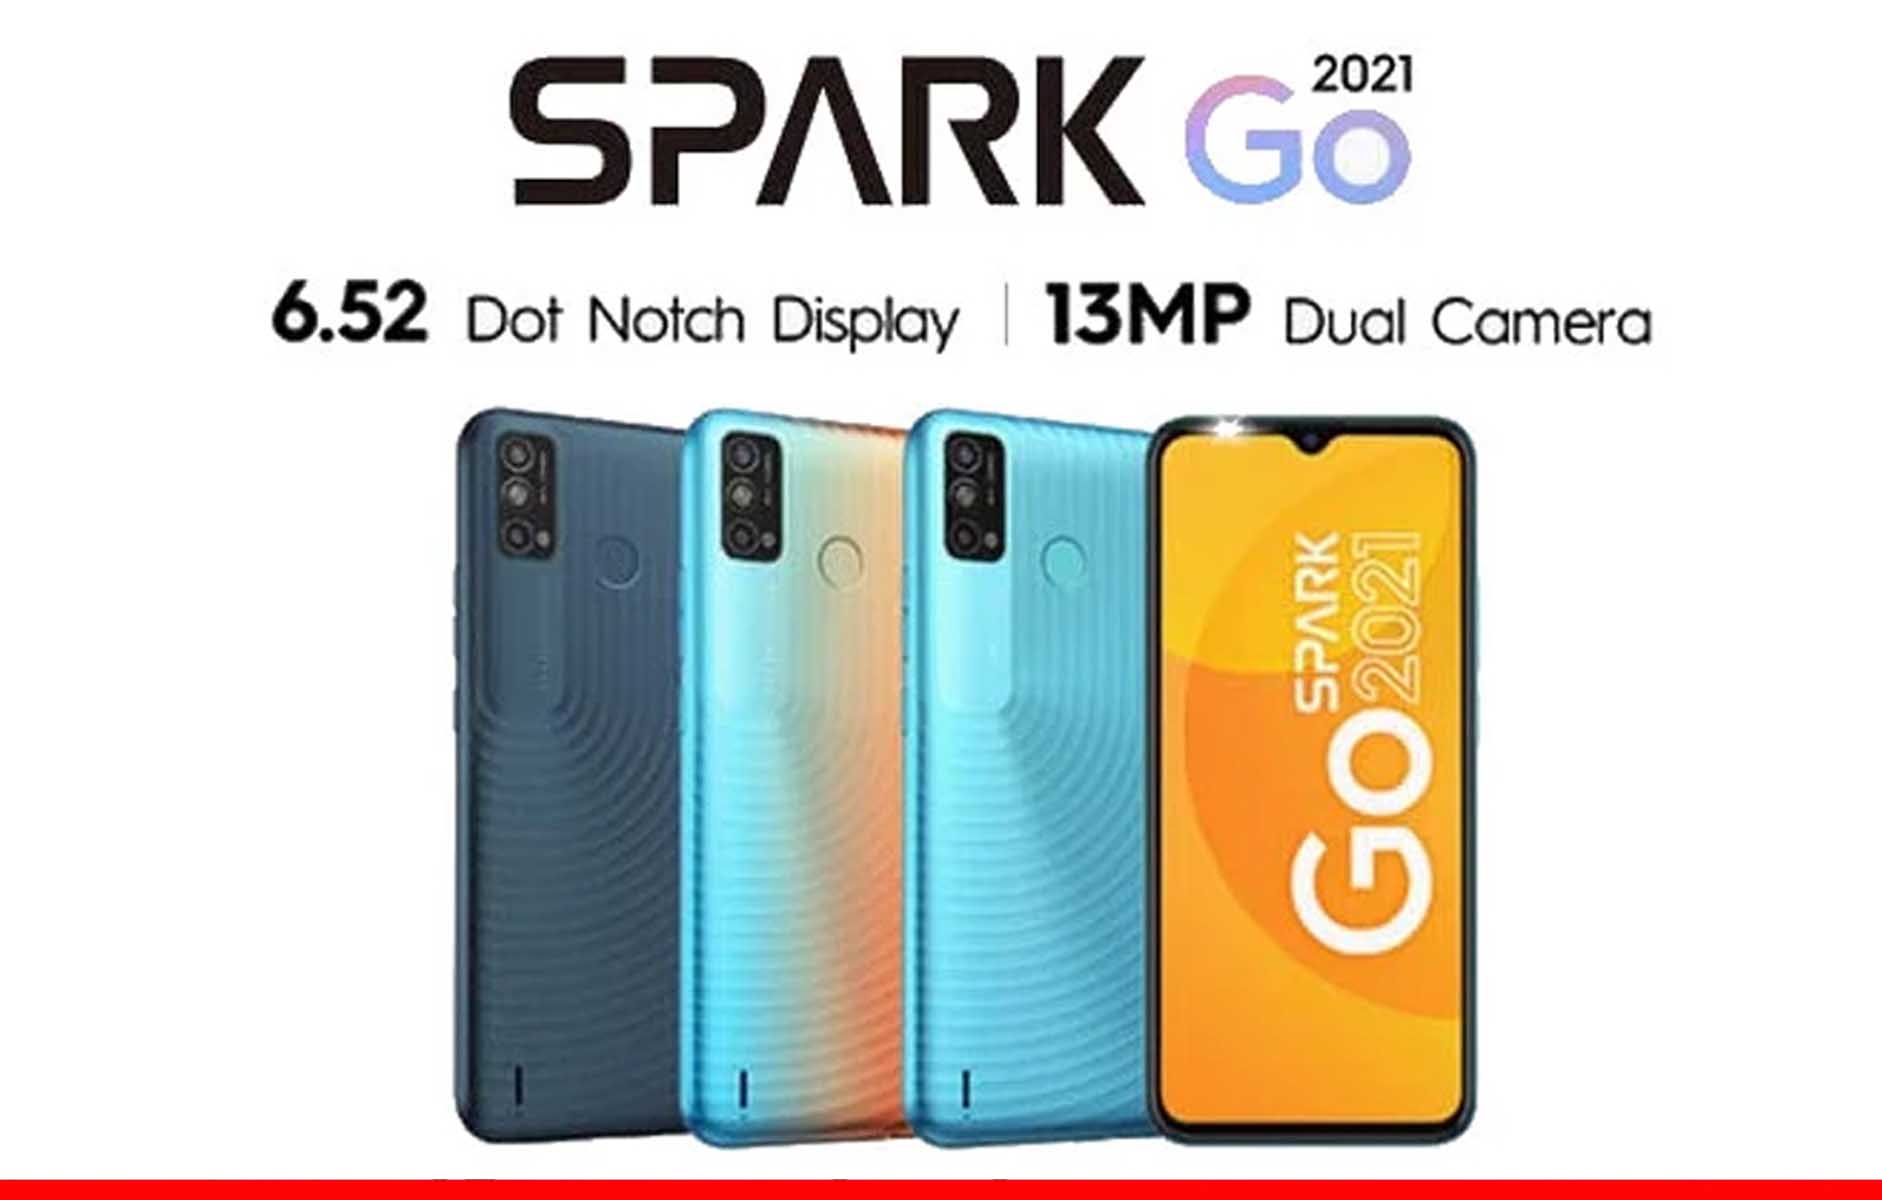 Телефон текно спарк 2024. Techno Spark 6 go 2021. Tekno Spark go 2022. Spark go 2021. Techno Spark go 2021.